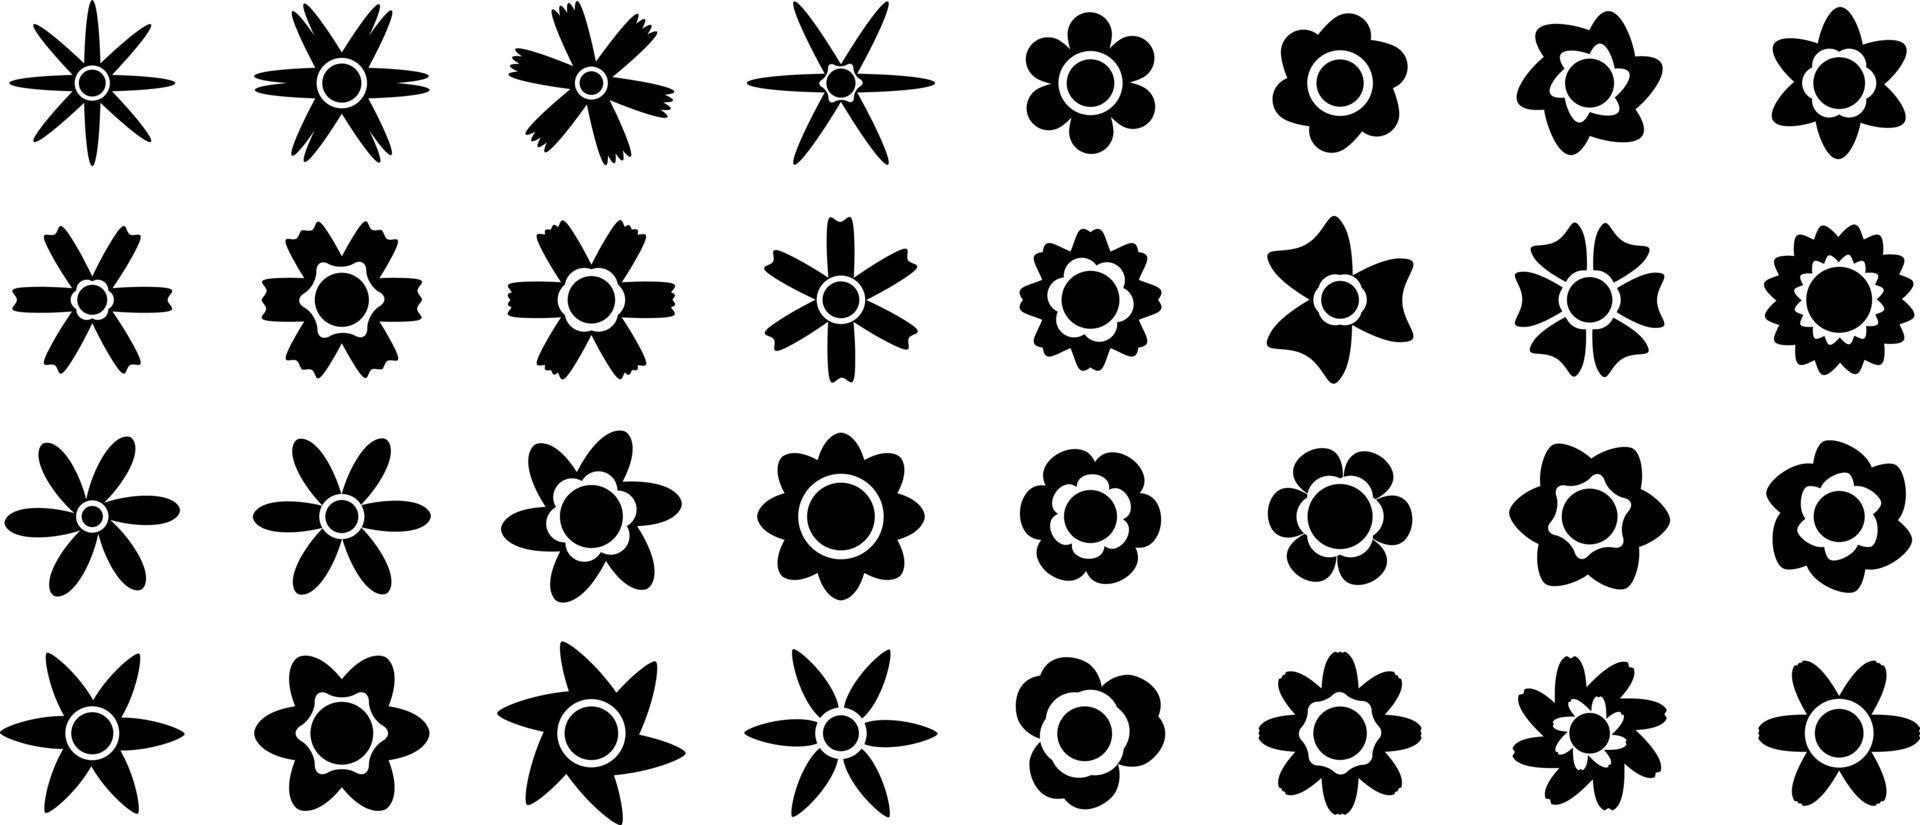 bloem pictogram en symbool geïsoleerd op een witte achtergrond vector